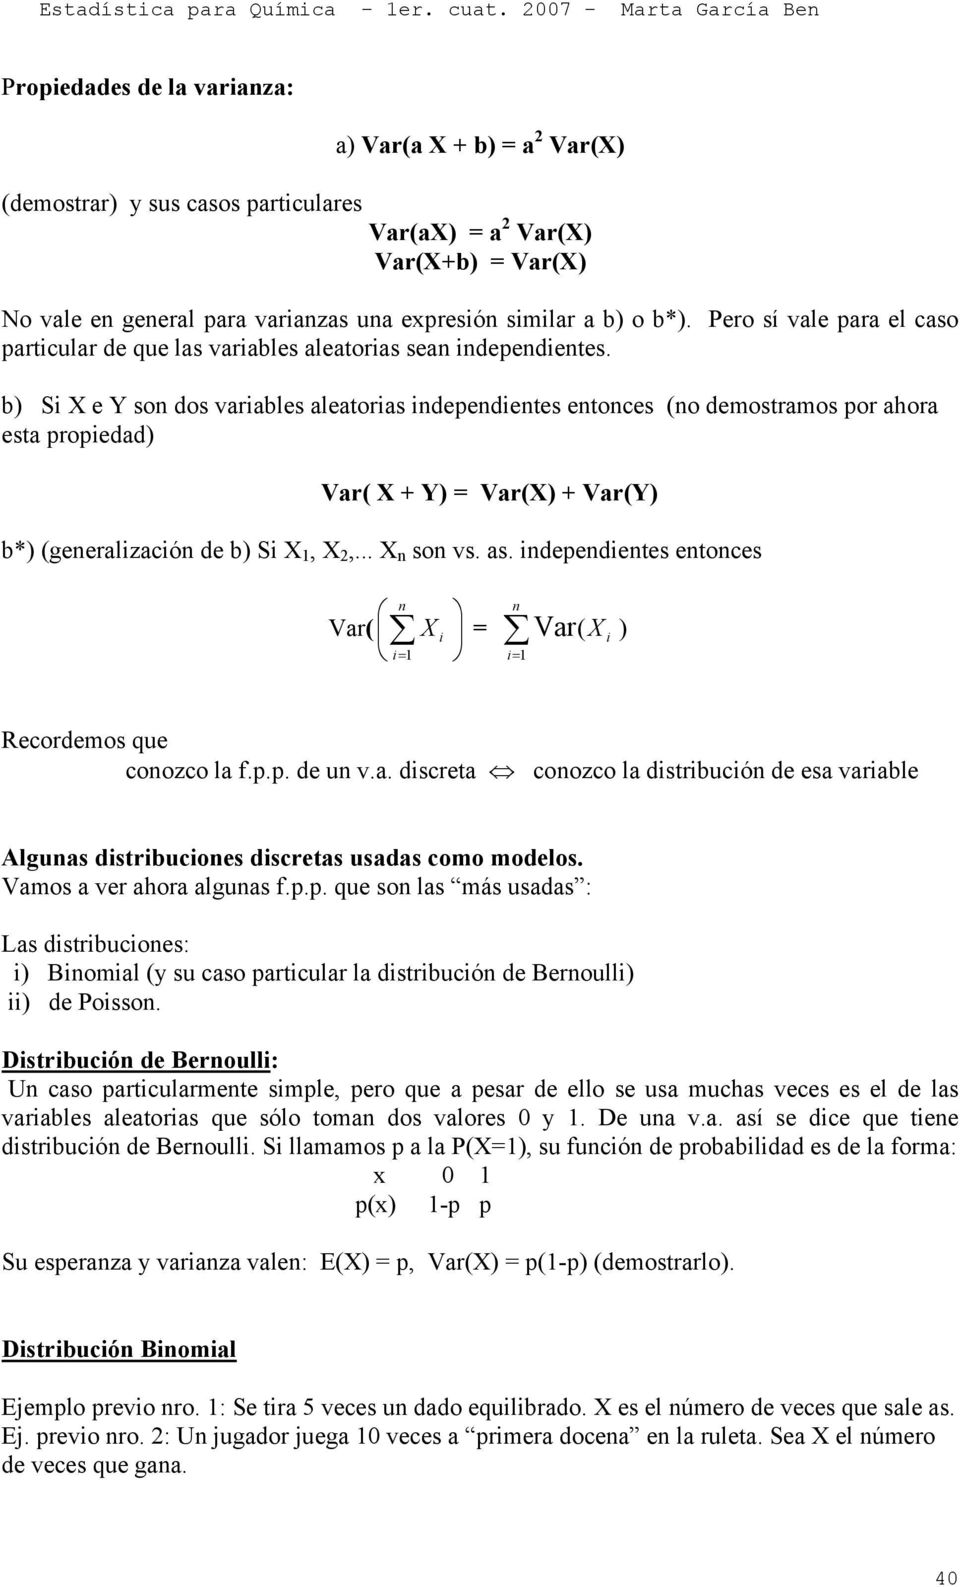 b) Si X e Y so dos variables aleatorias idepedietes etoces (o demostramos por ahora esta propiedad) Var( X + Y) = Var(X) + Var(Y) b*) (geeralizació de b) Si X 1, X,... X so vs. as.